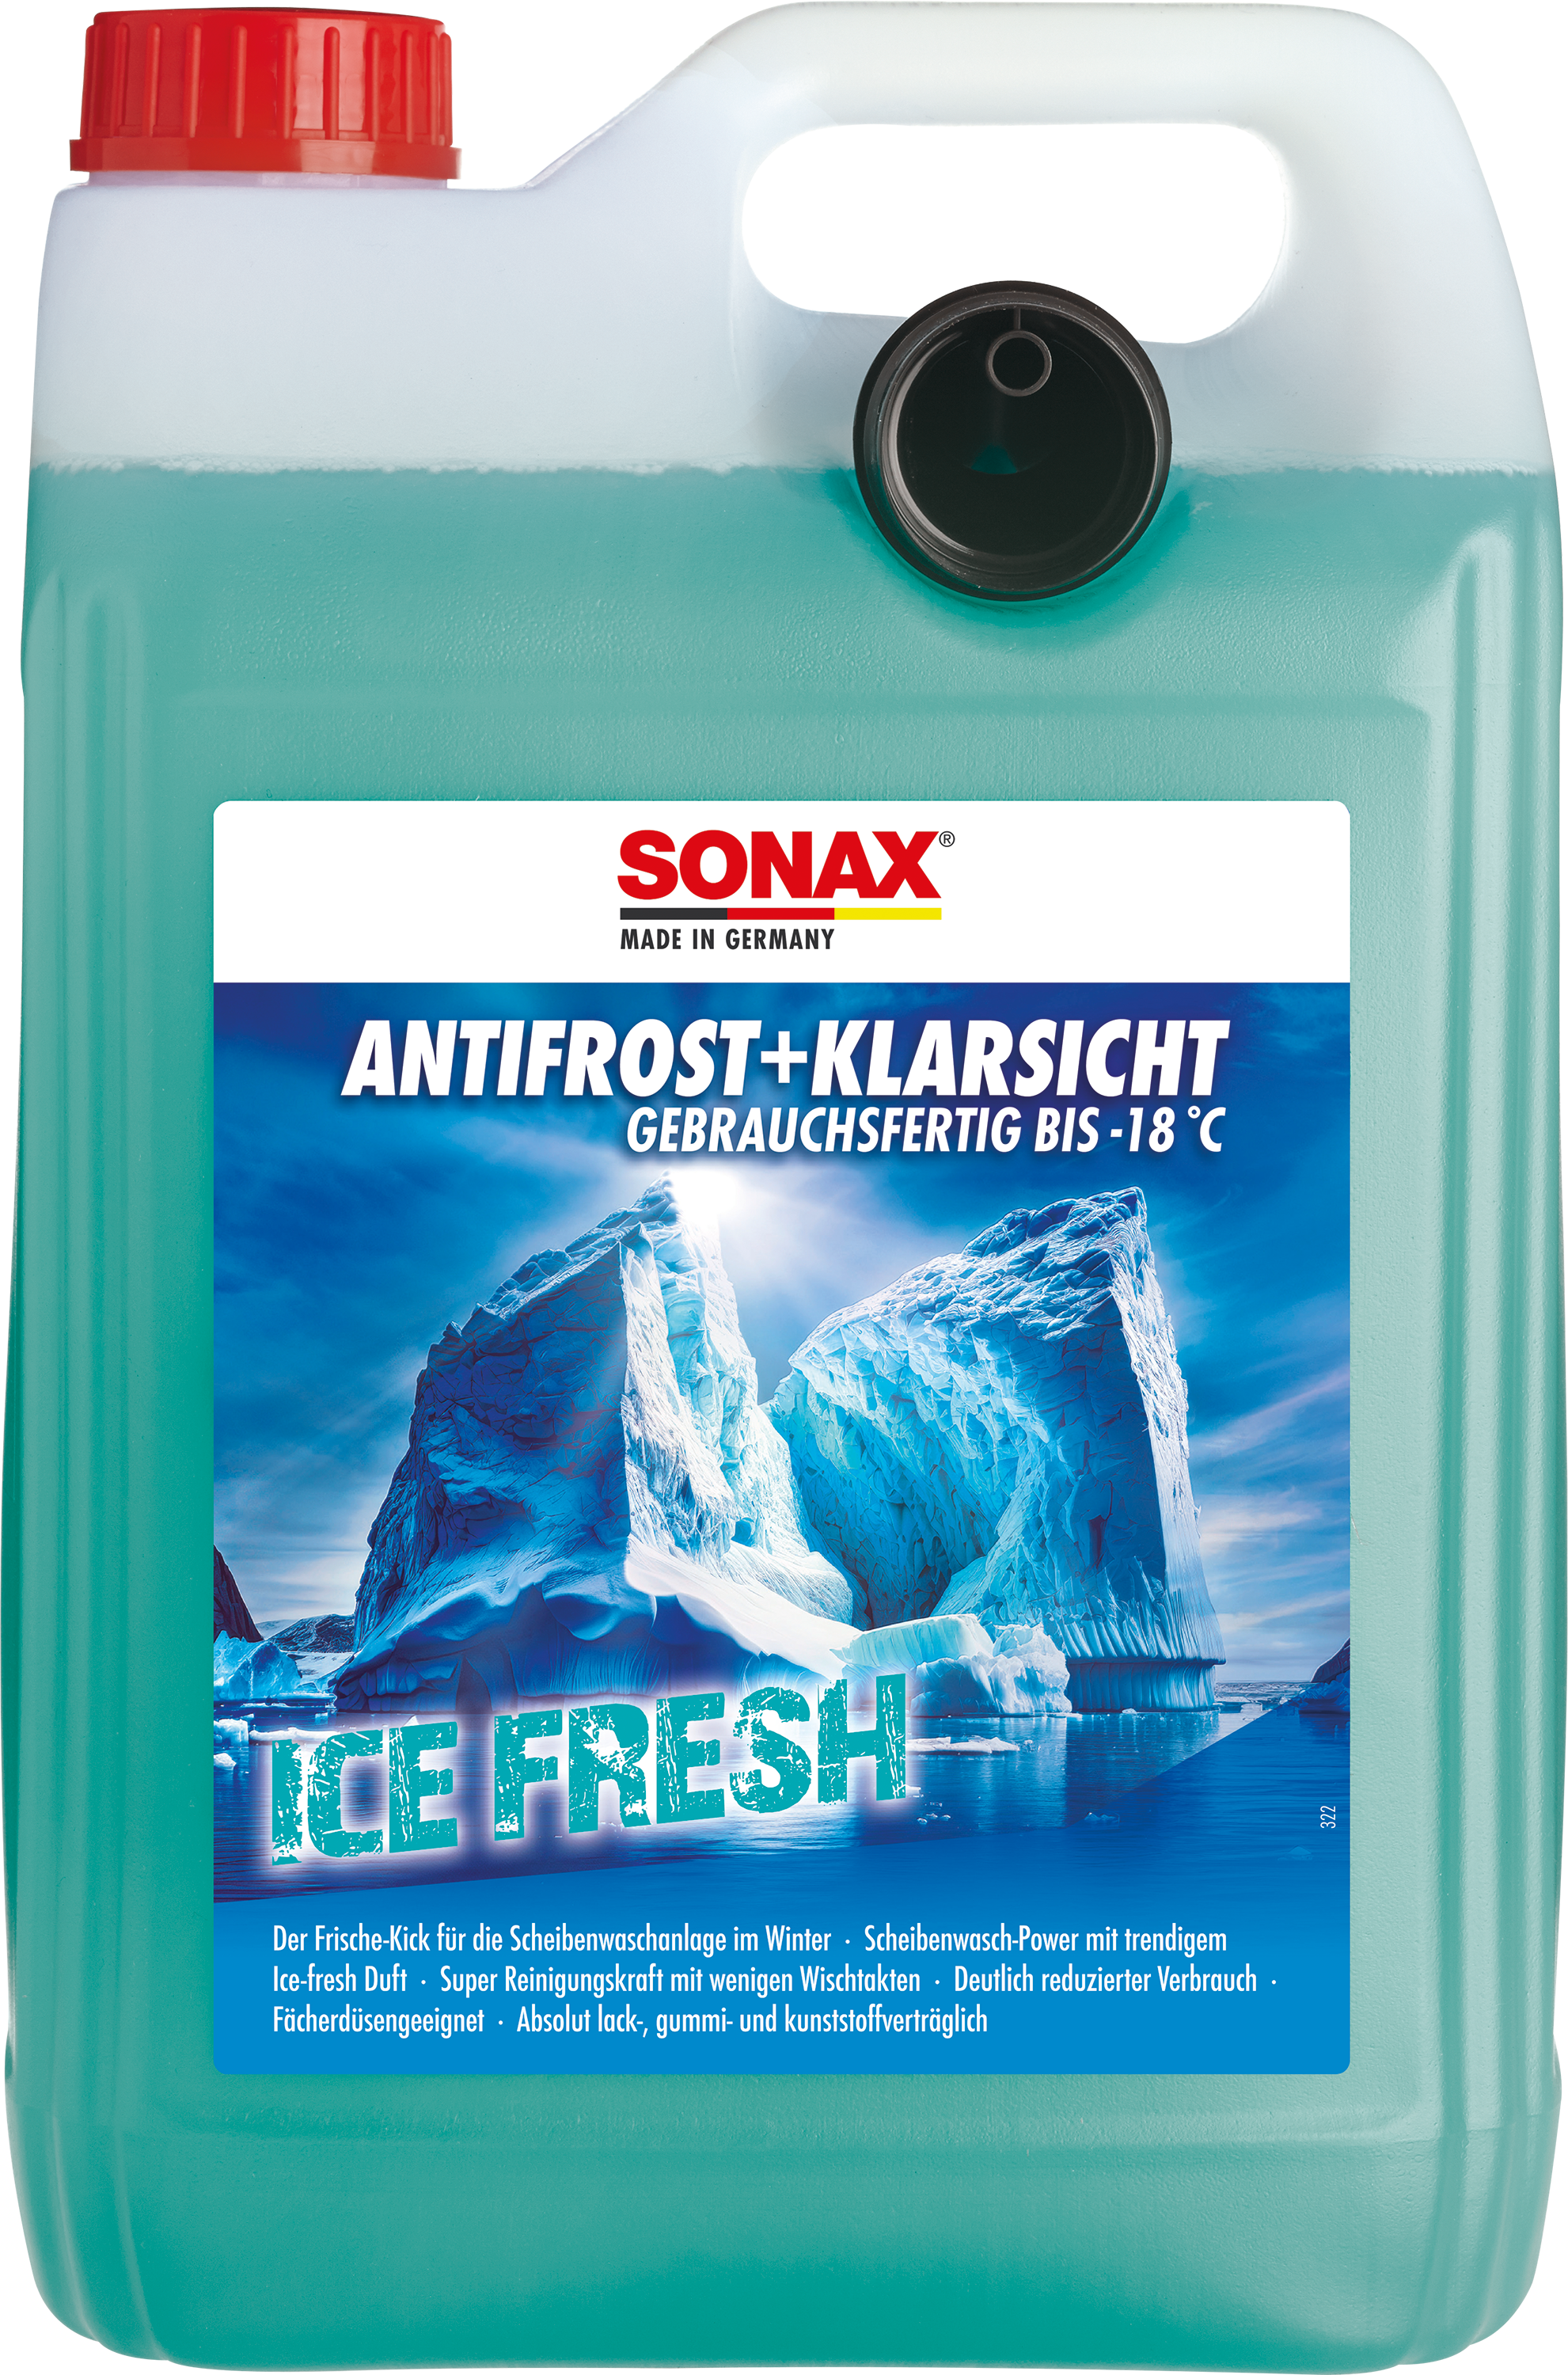 Sonax AntiFrost & KlarSicht Konzentrat Winter 250 ml 03321000